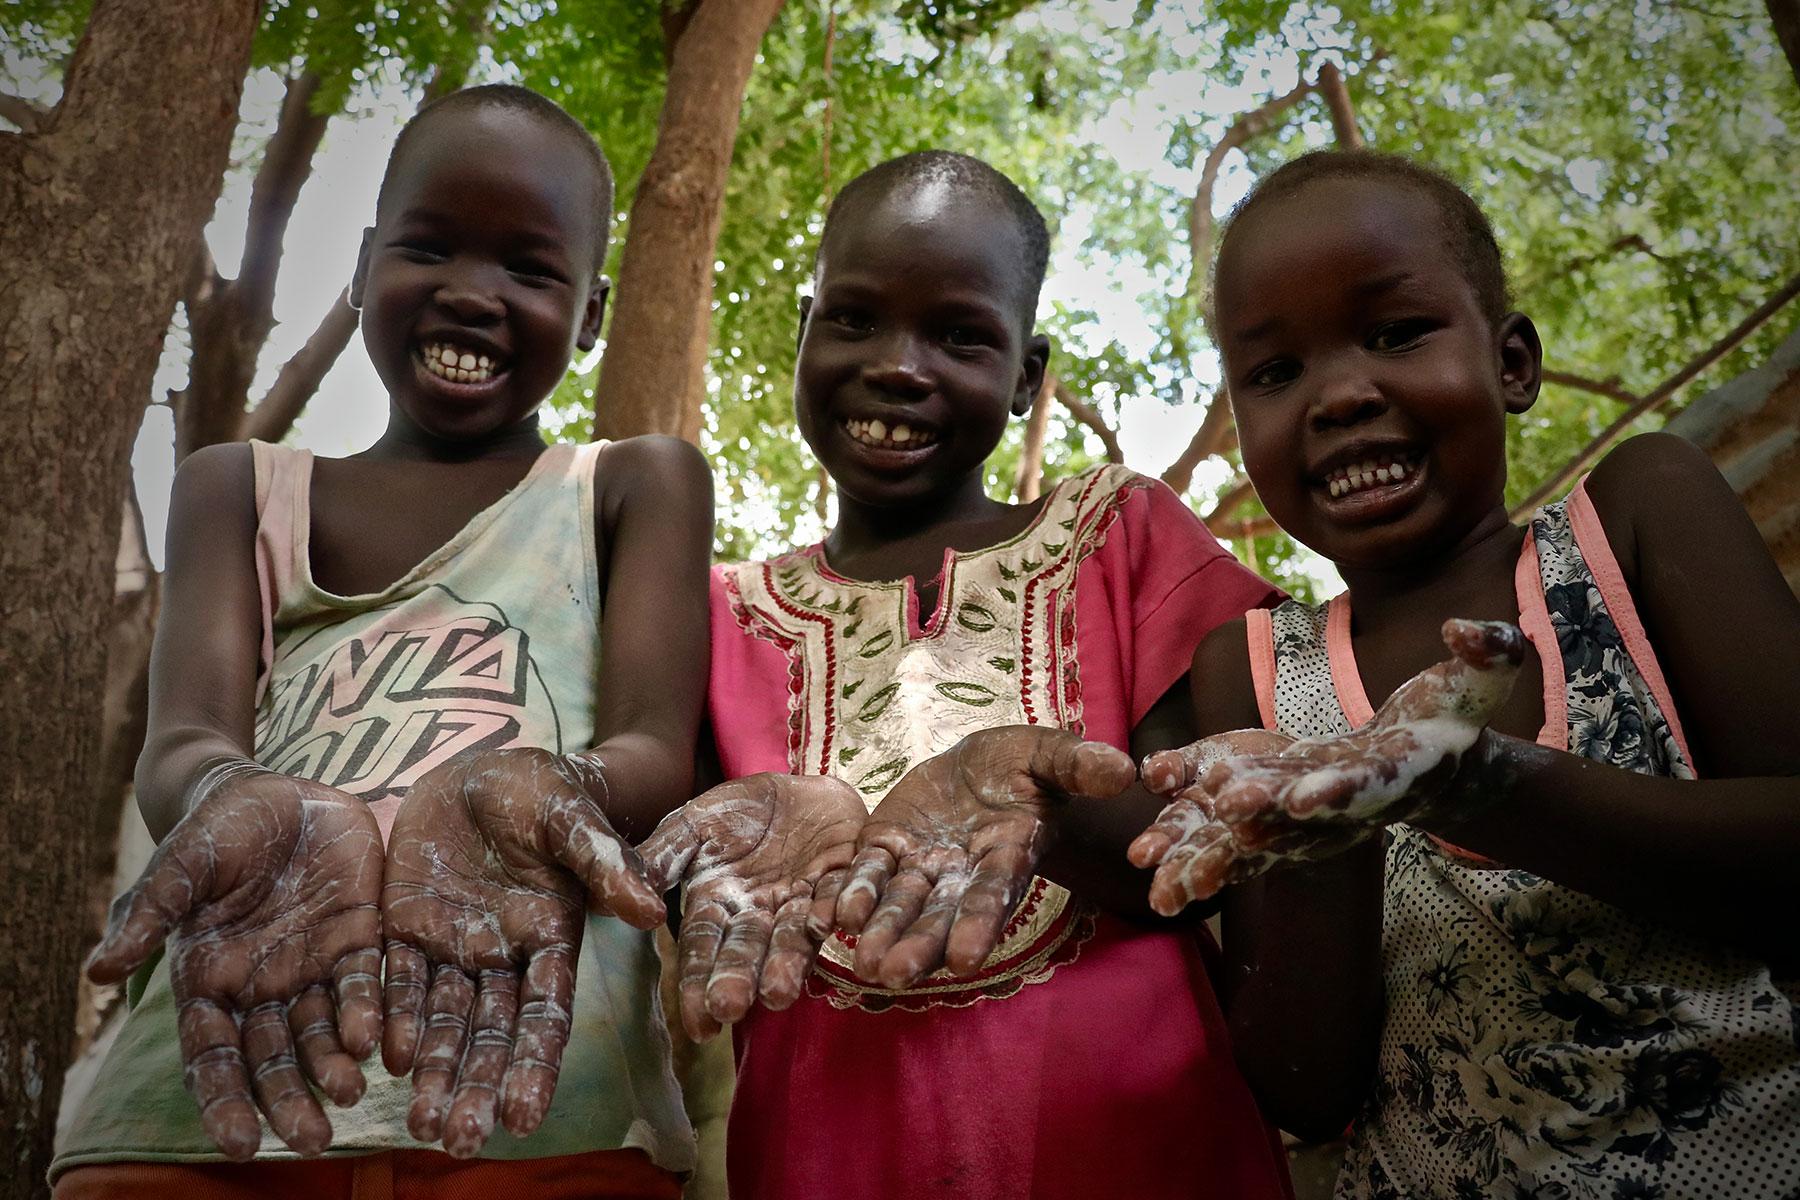 Gründliches Händewaschen mit Seife kann die Verbreitung von COVID-19 verhindern: (v.l.) Freedom Gai (9 Jahre), Nyalat Pouch (7 Jahre) und Nyabena Gai (5 Jahre). Alle Fotos: LWB/A. Kwamboka